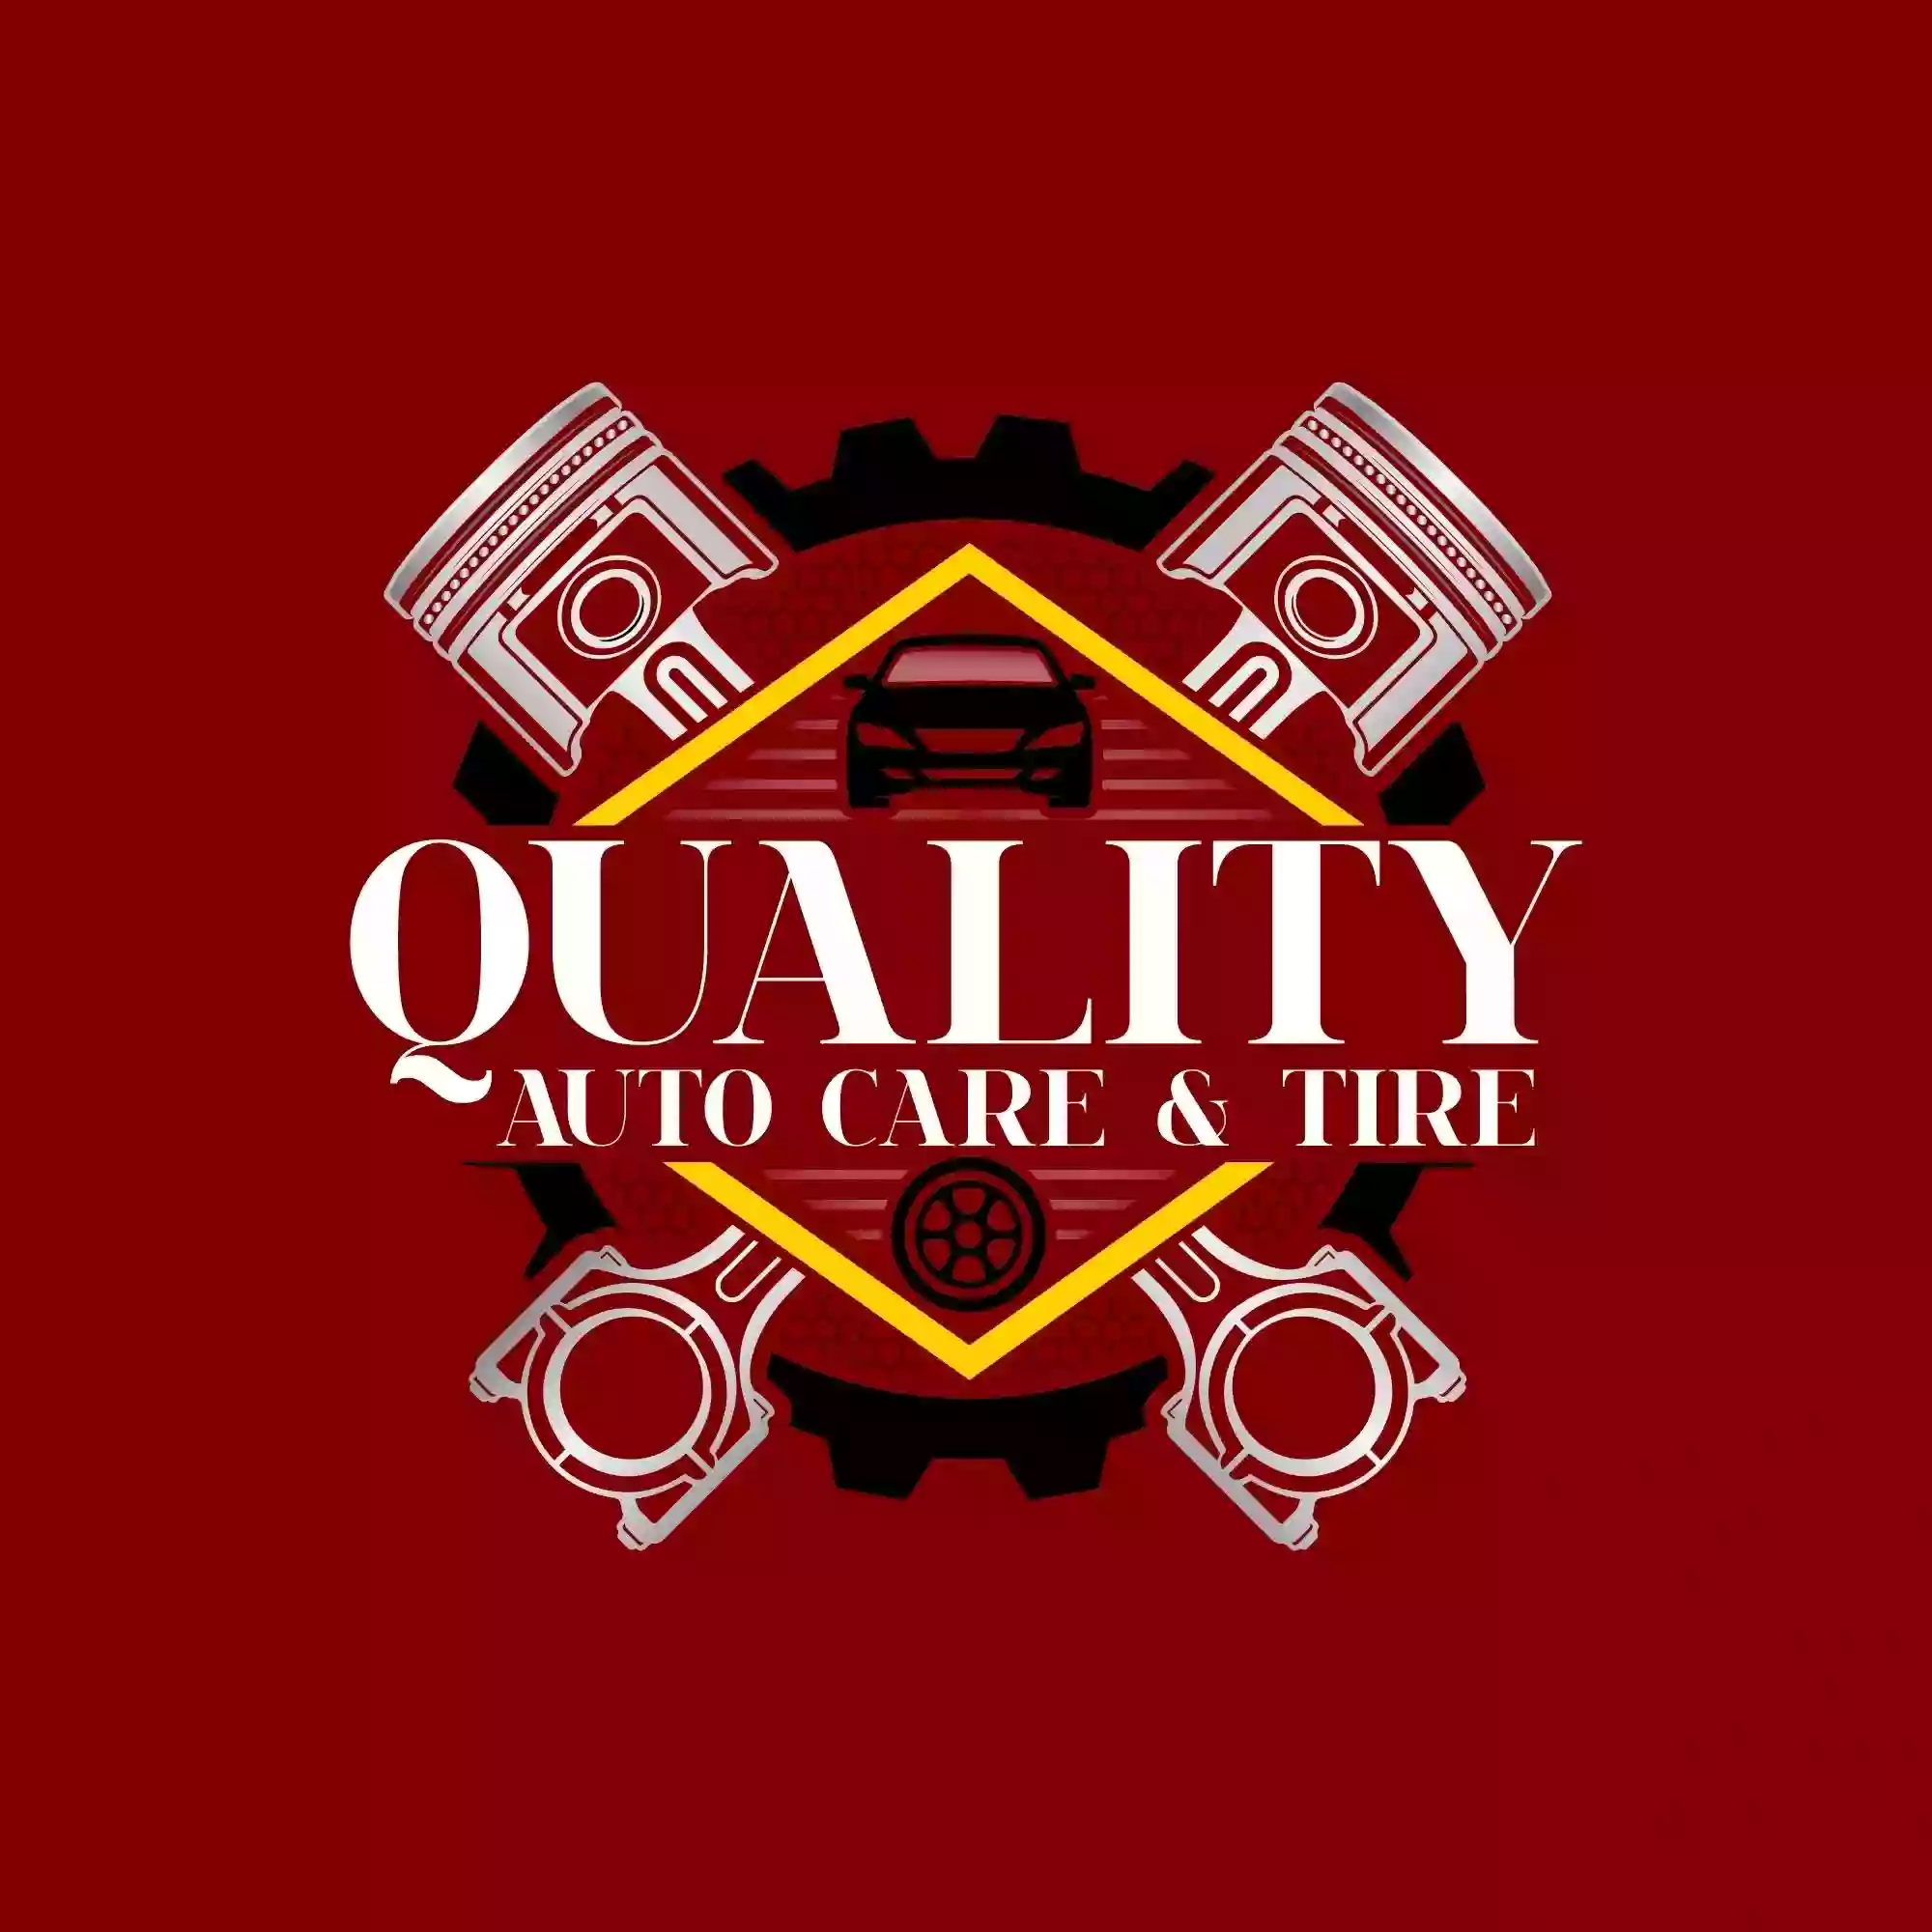 Quality Auto Care & Tire